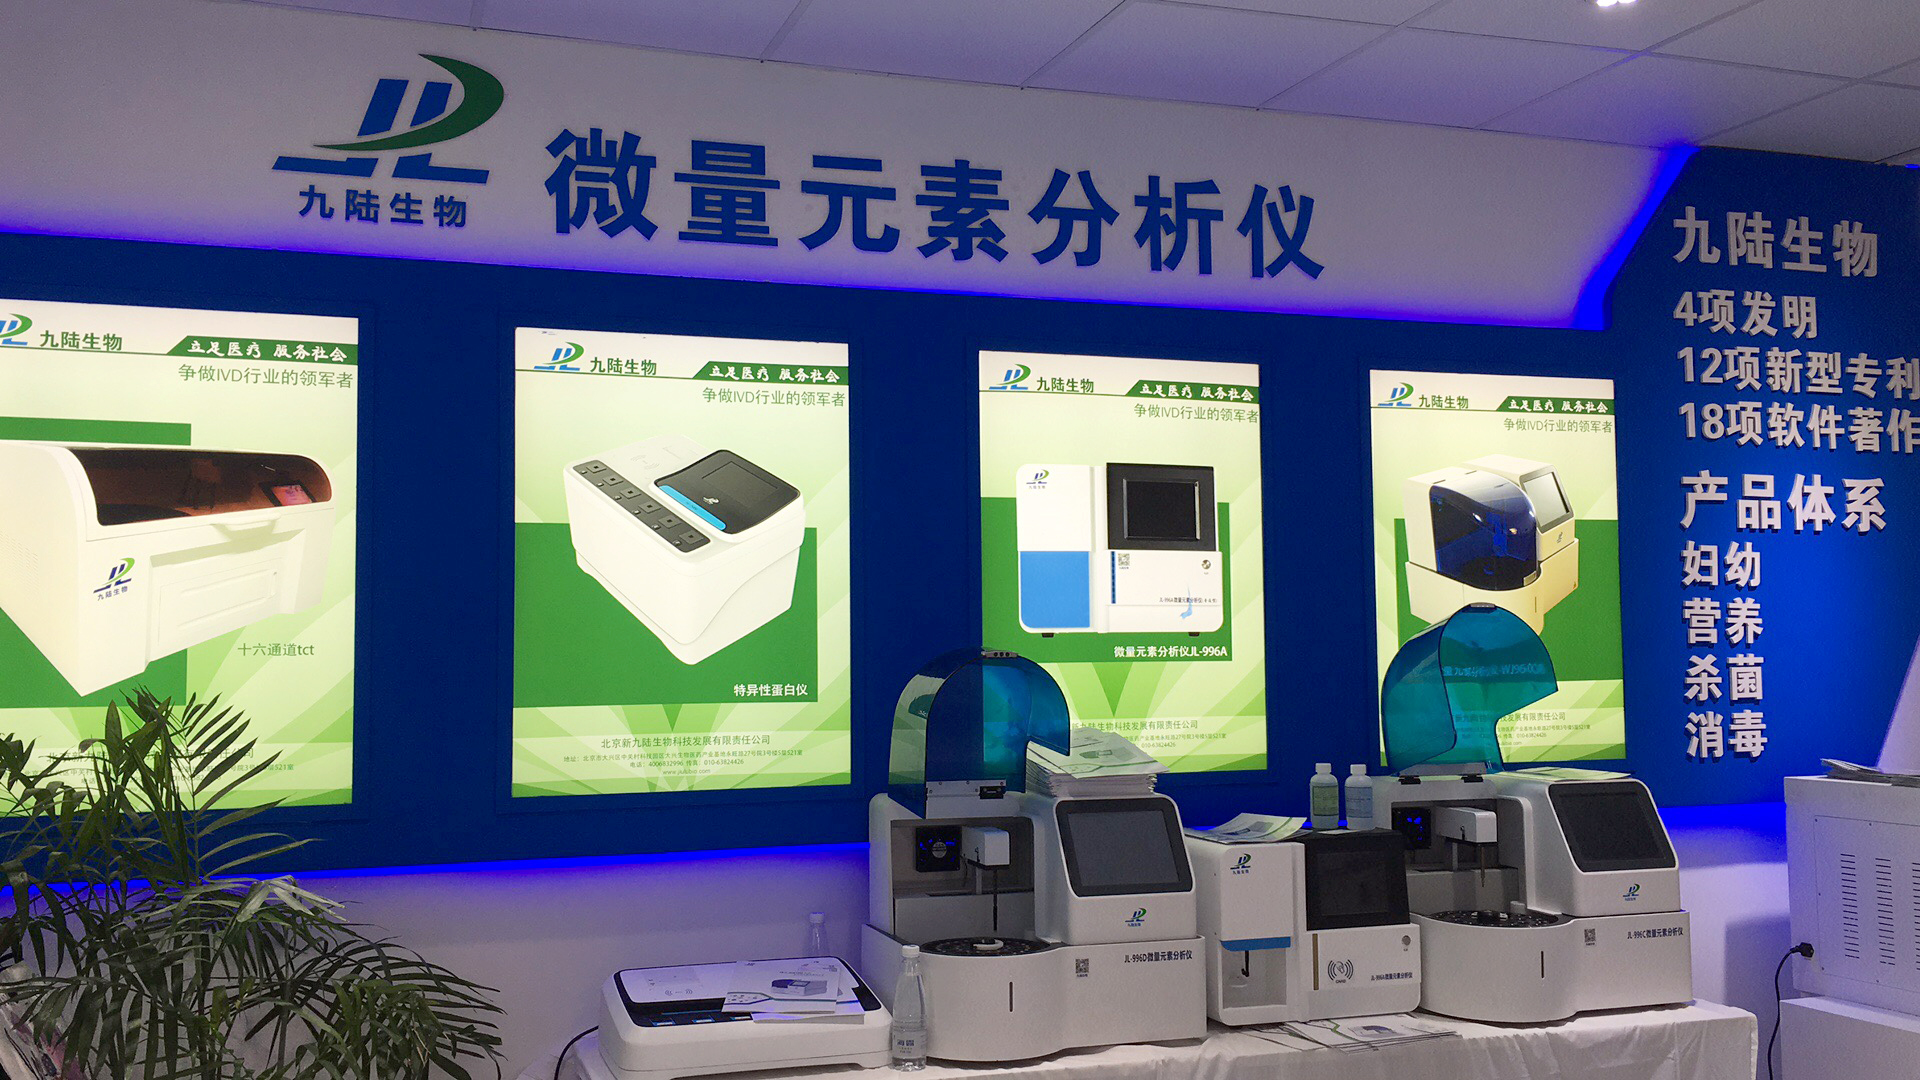 北京诊所使用多的微量元素检测仪有哪些